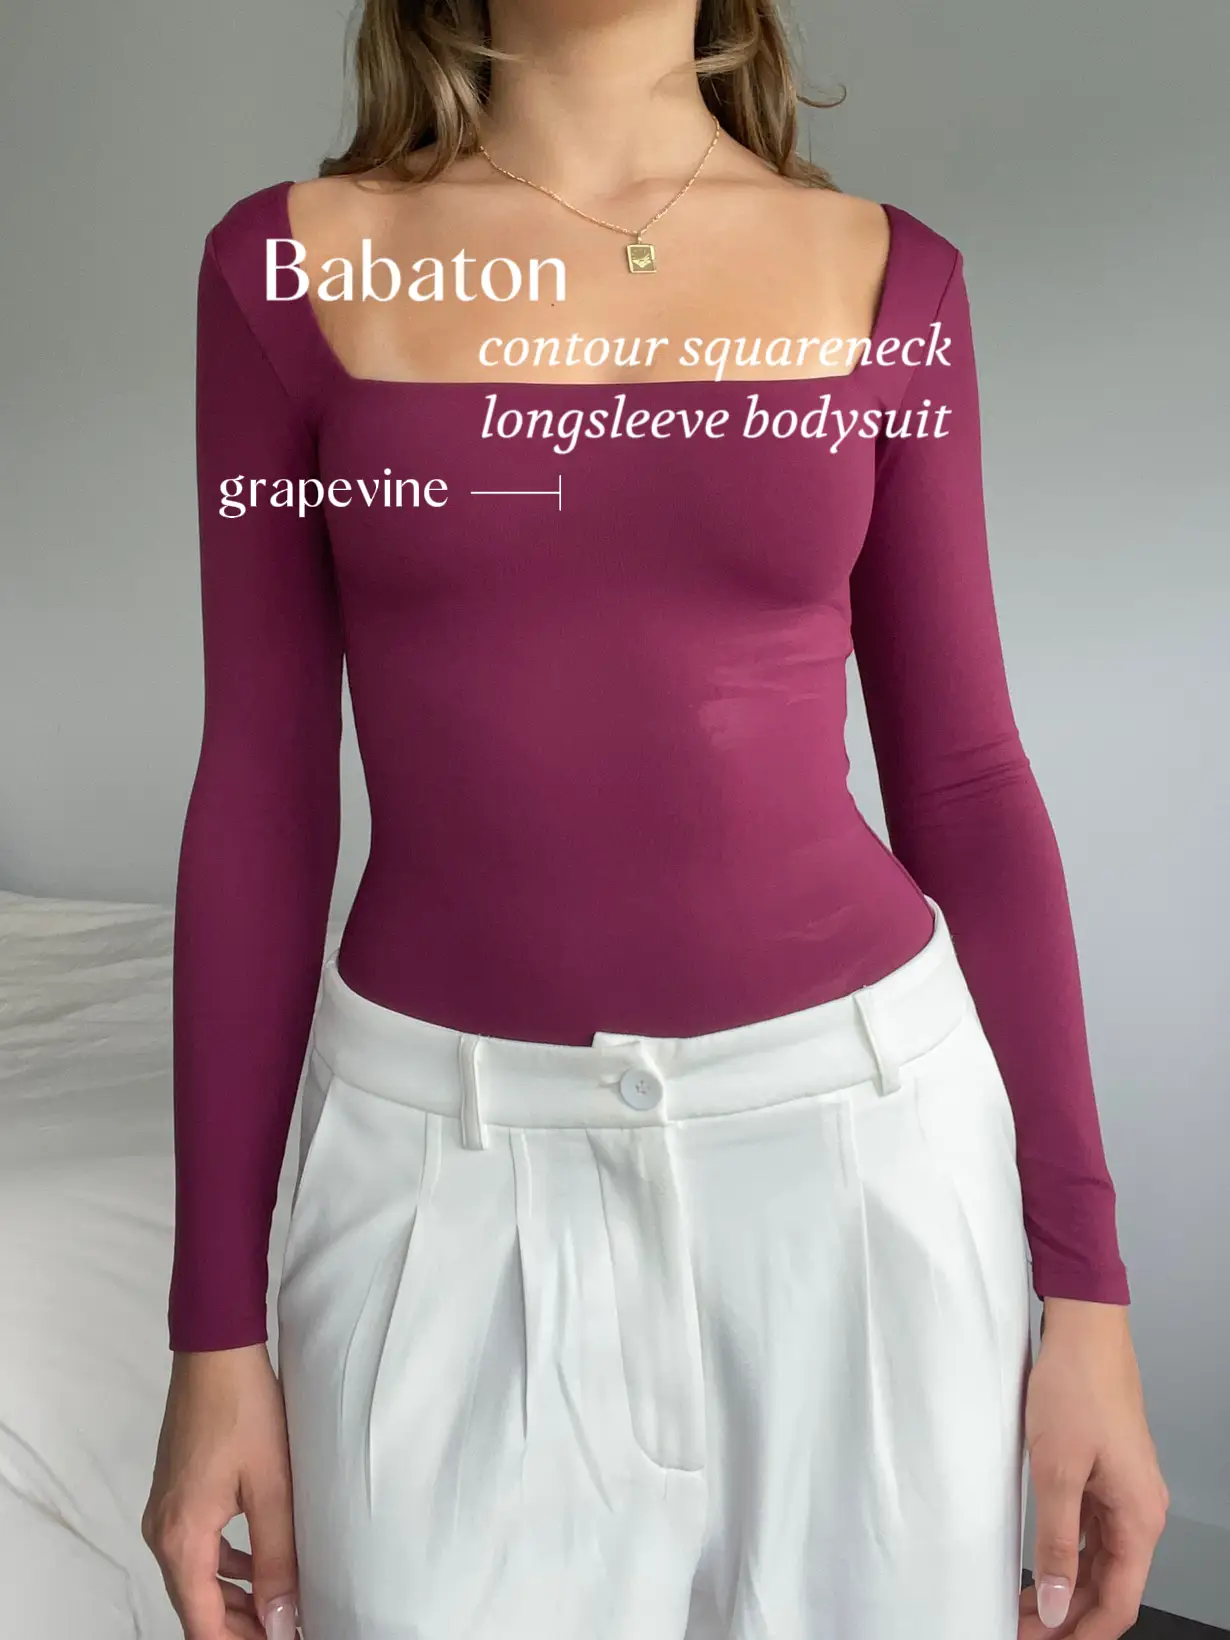 NWT Aritzia Babaton Bodysuit Contour Square Neck Flax Beige Size